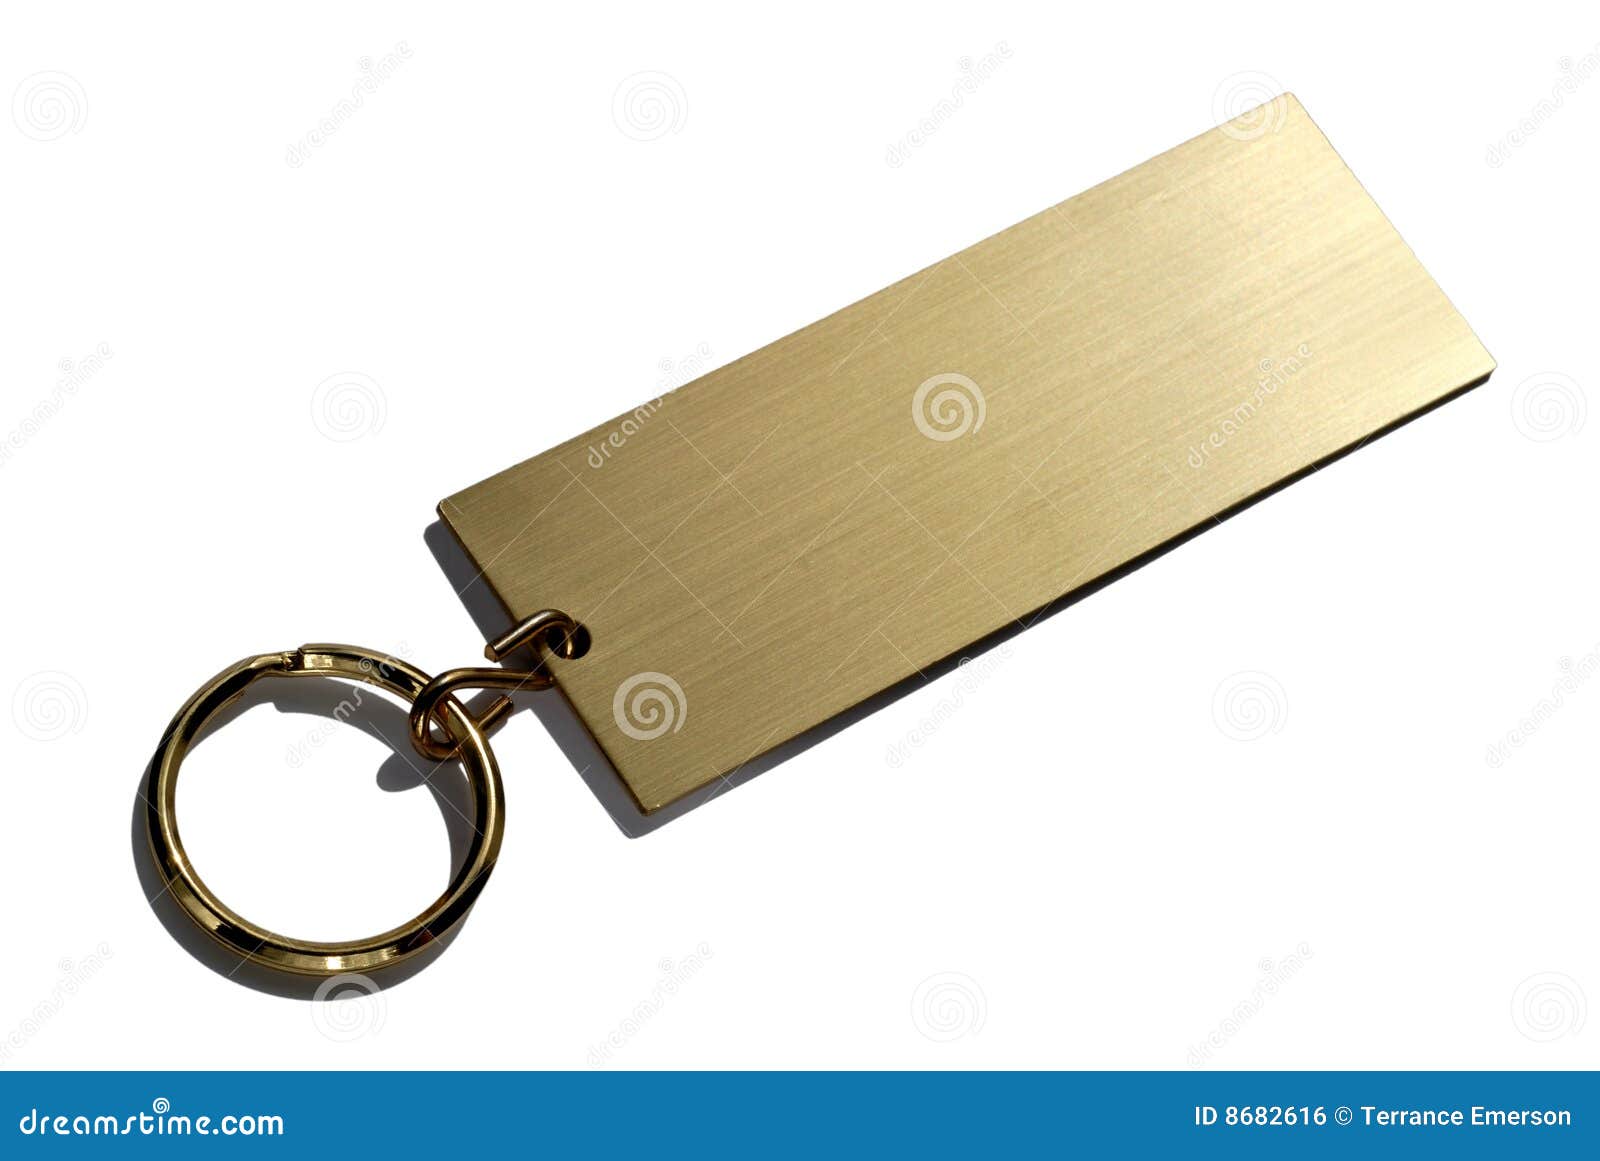 brass keychain nameplate